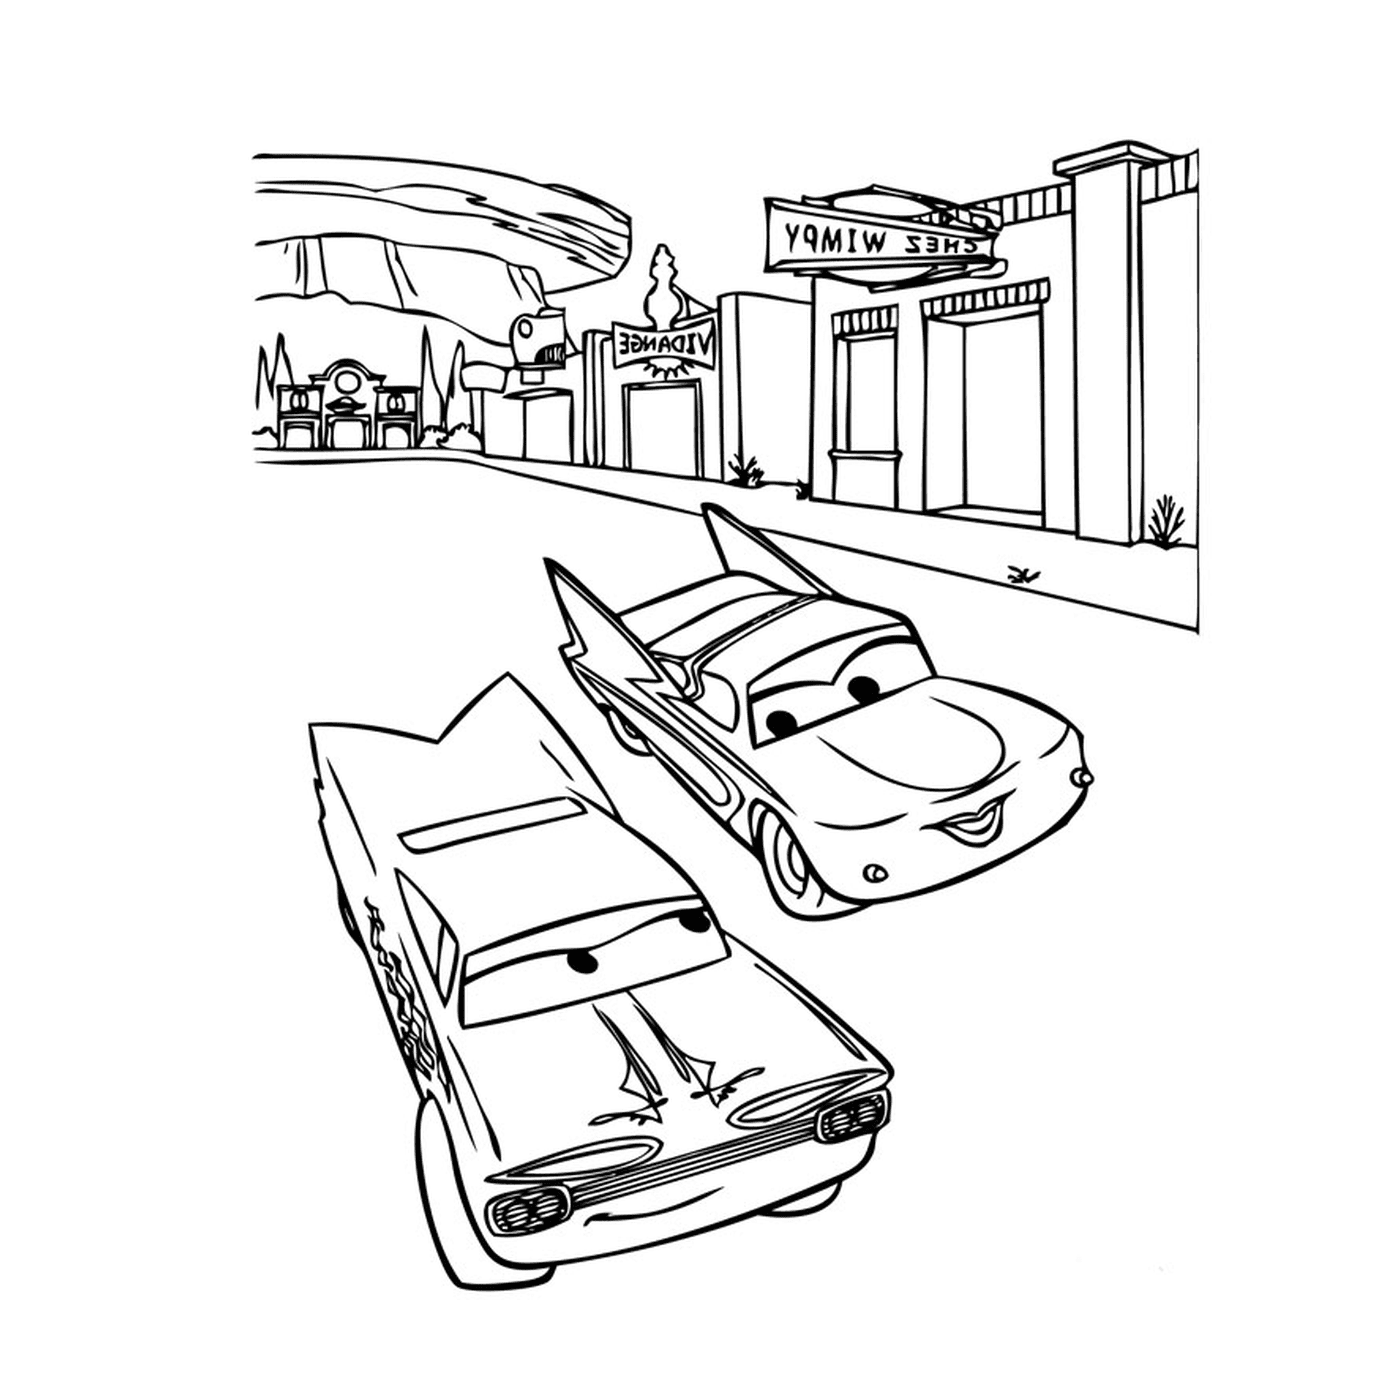   Des voitures sur une rue 